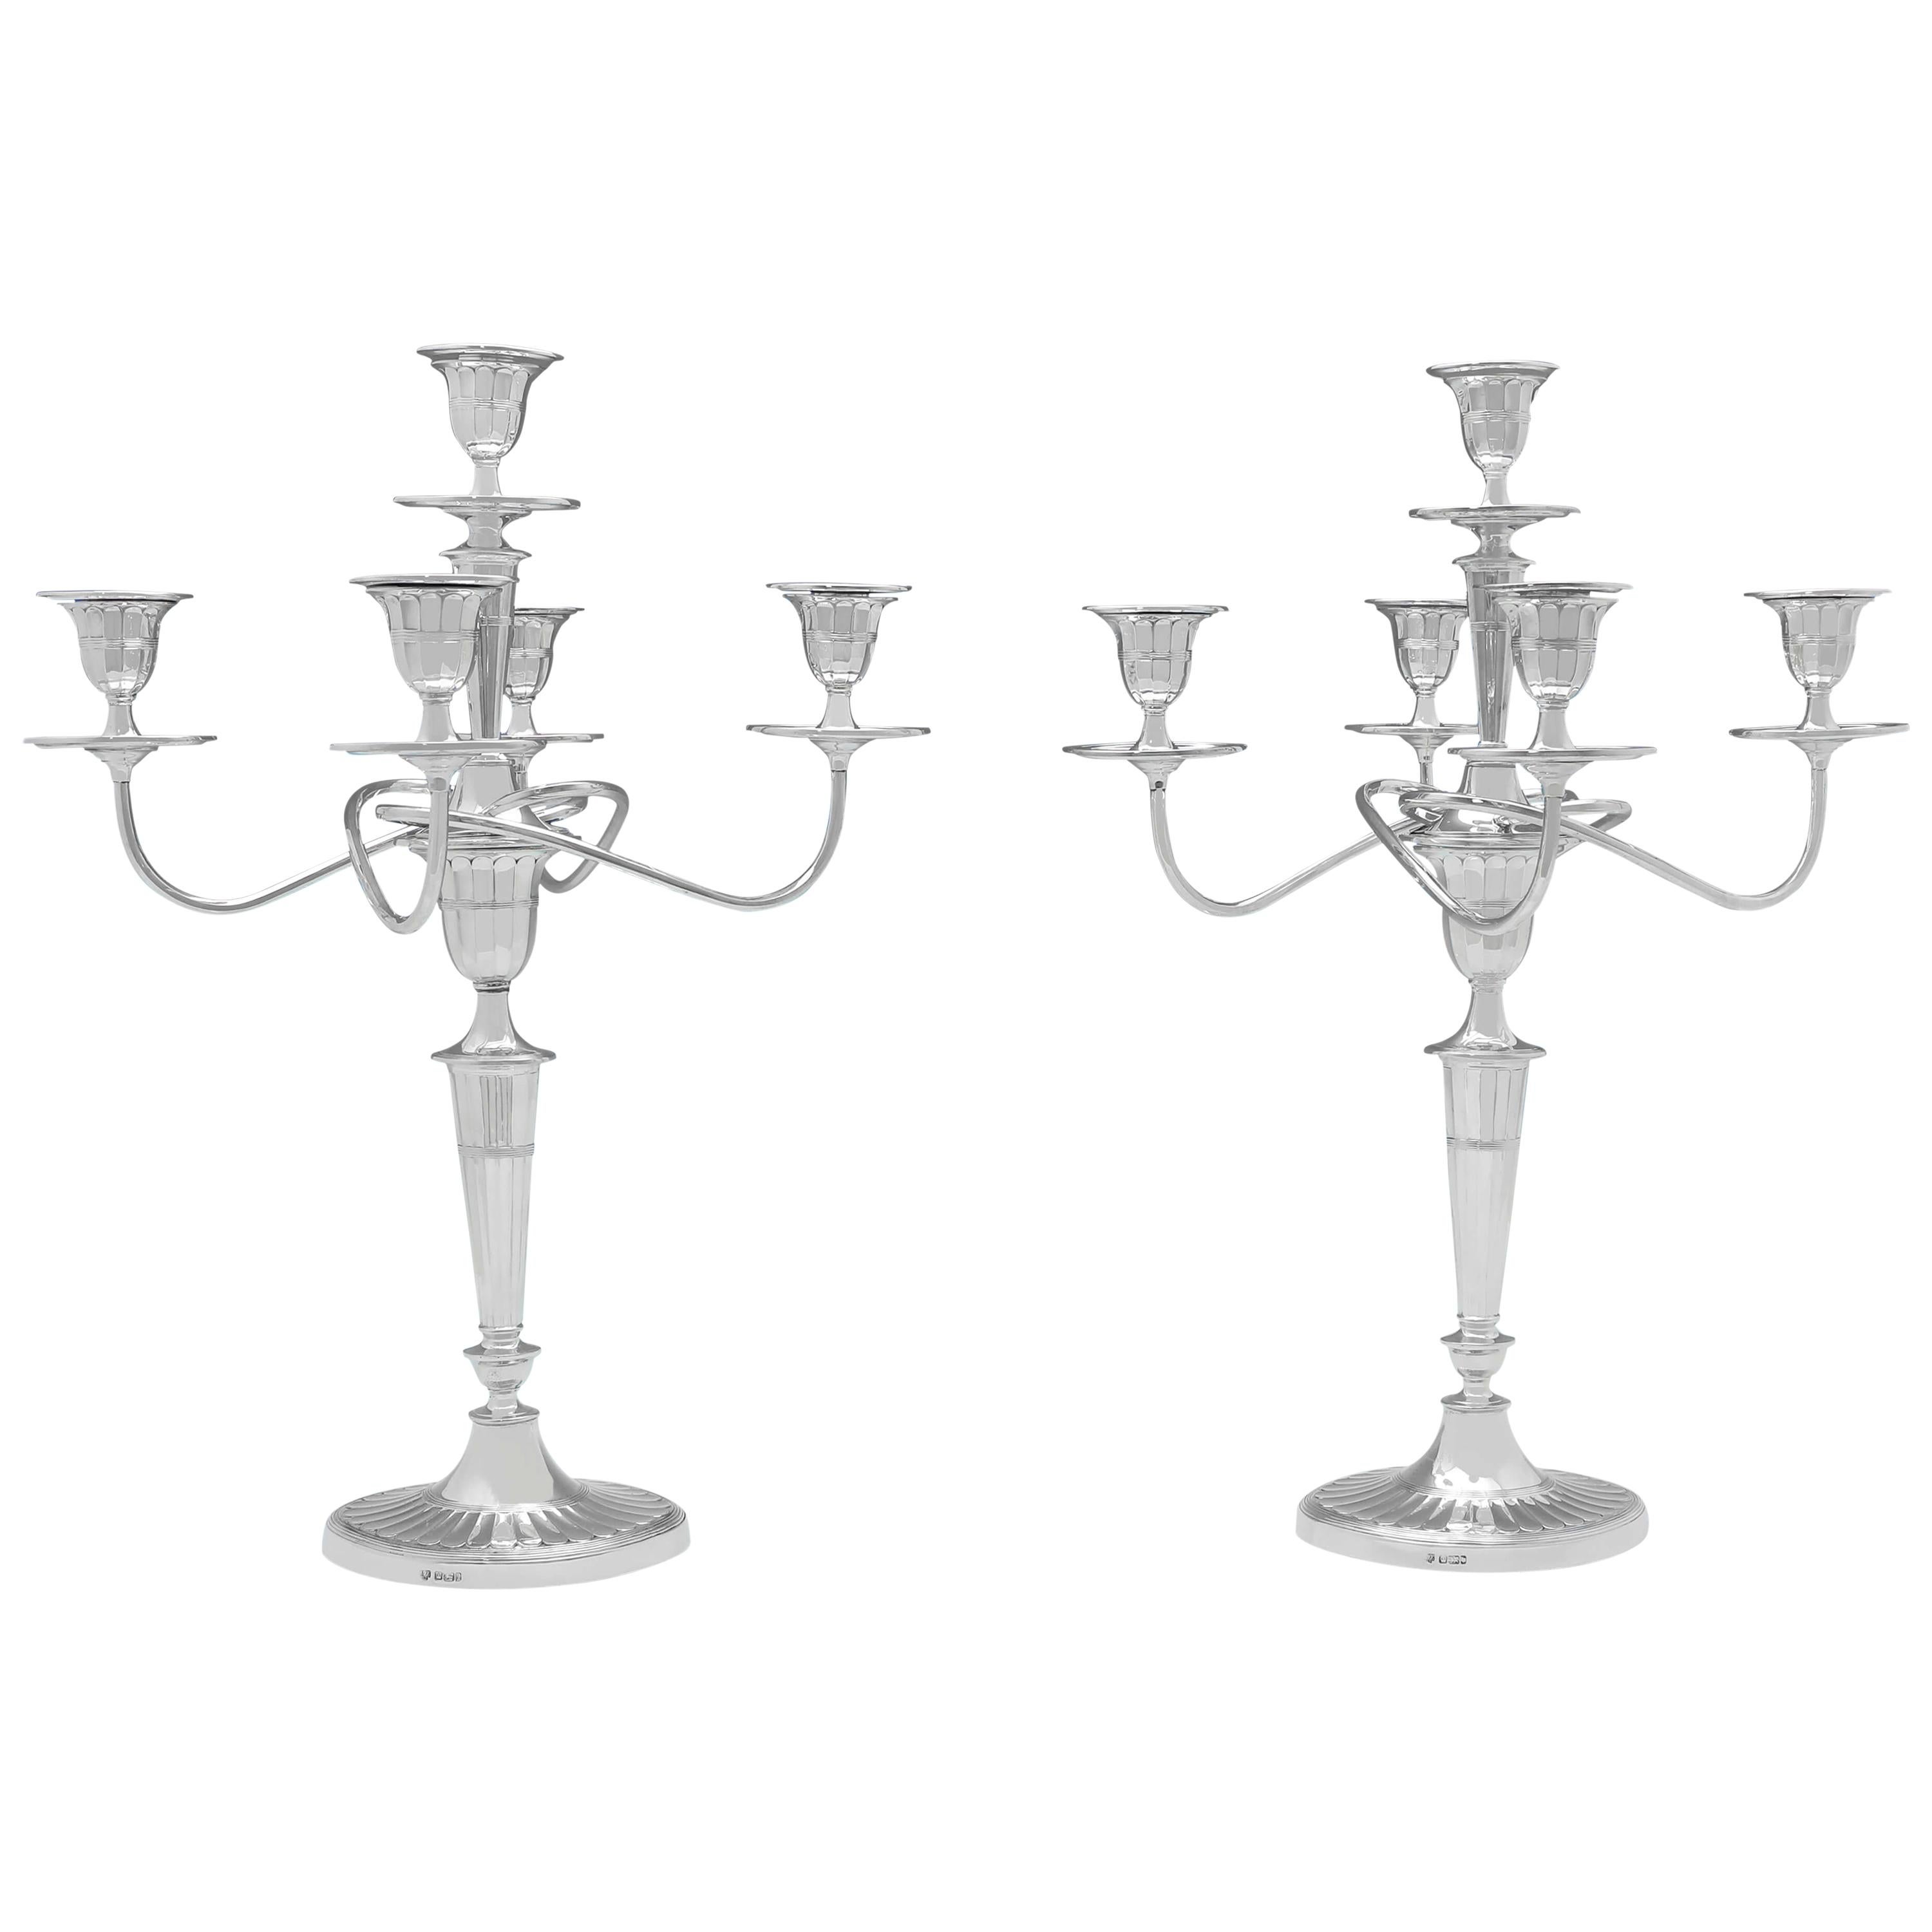 Paire de candélabres anciens à 5 lumières en argent sterling de style Batwing fabriqués en 1901